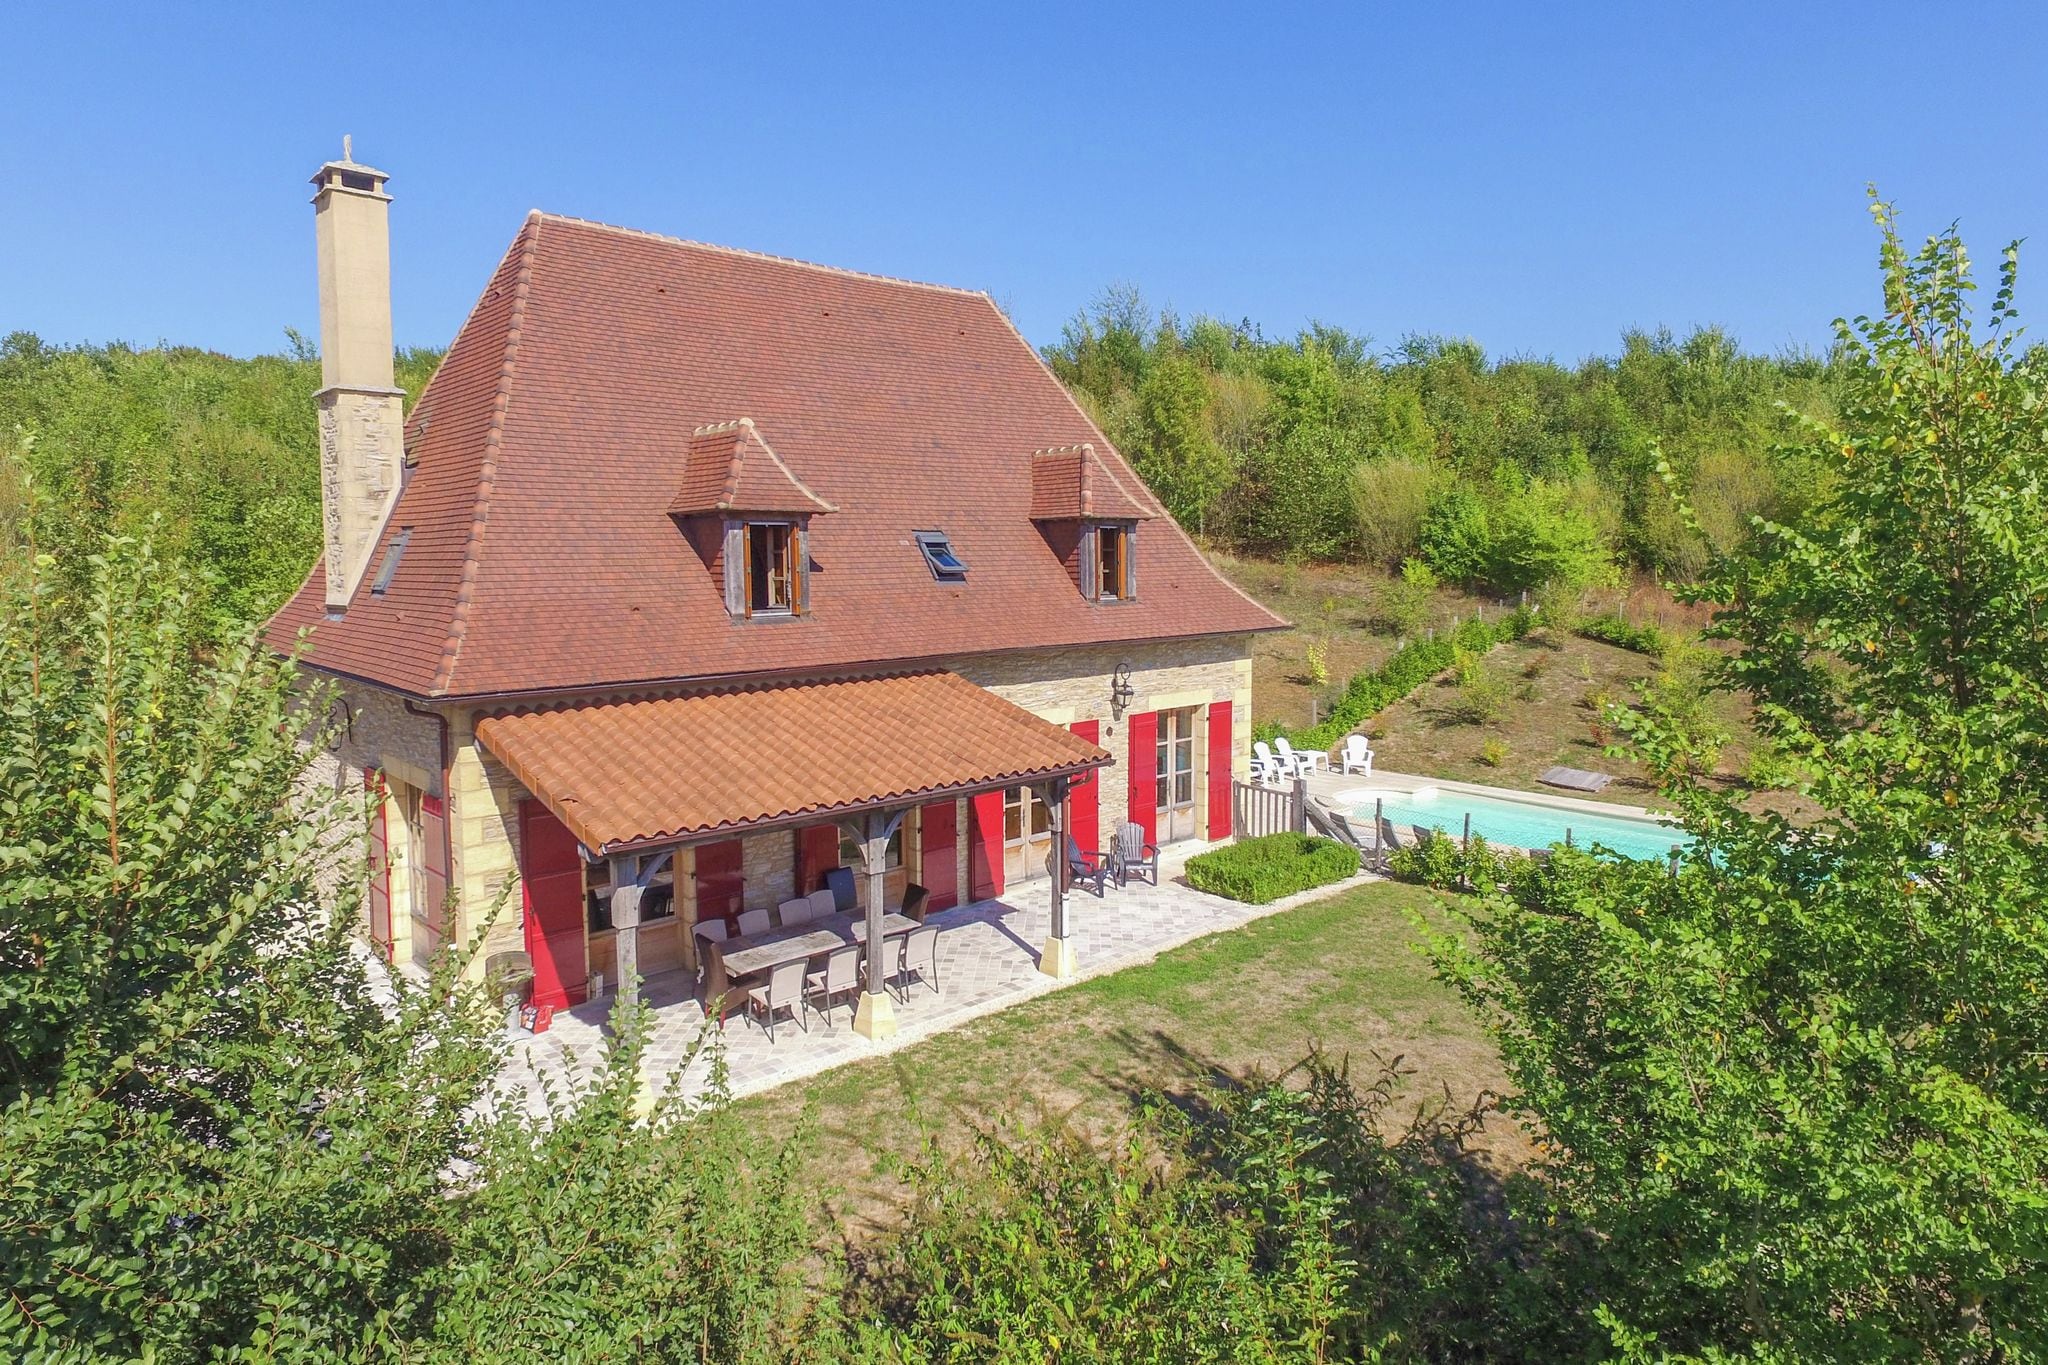 Luxe villa met privézwembad, weids uitzicht en genoeg ruimte voor twee gezinnen